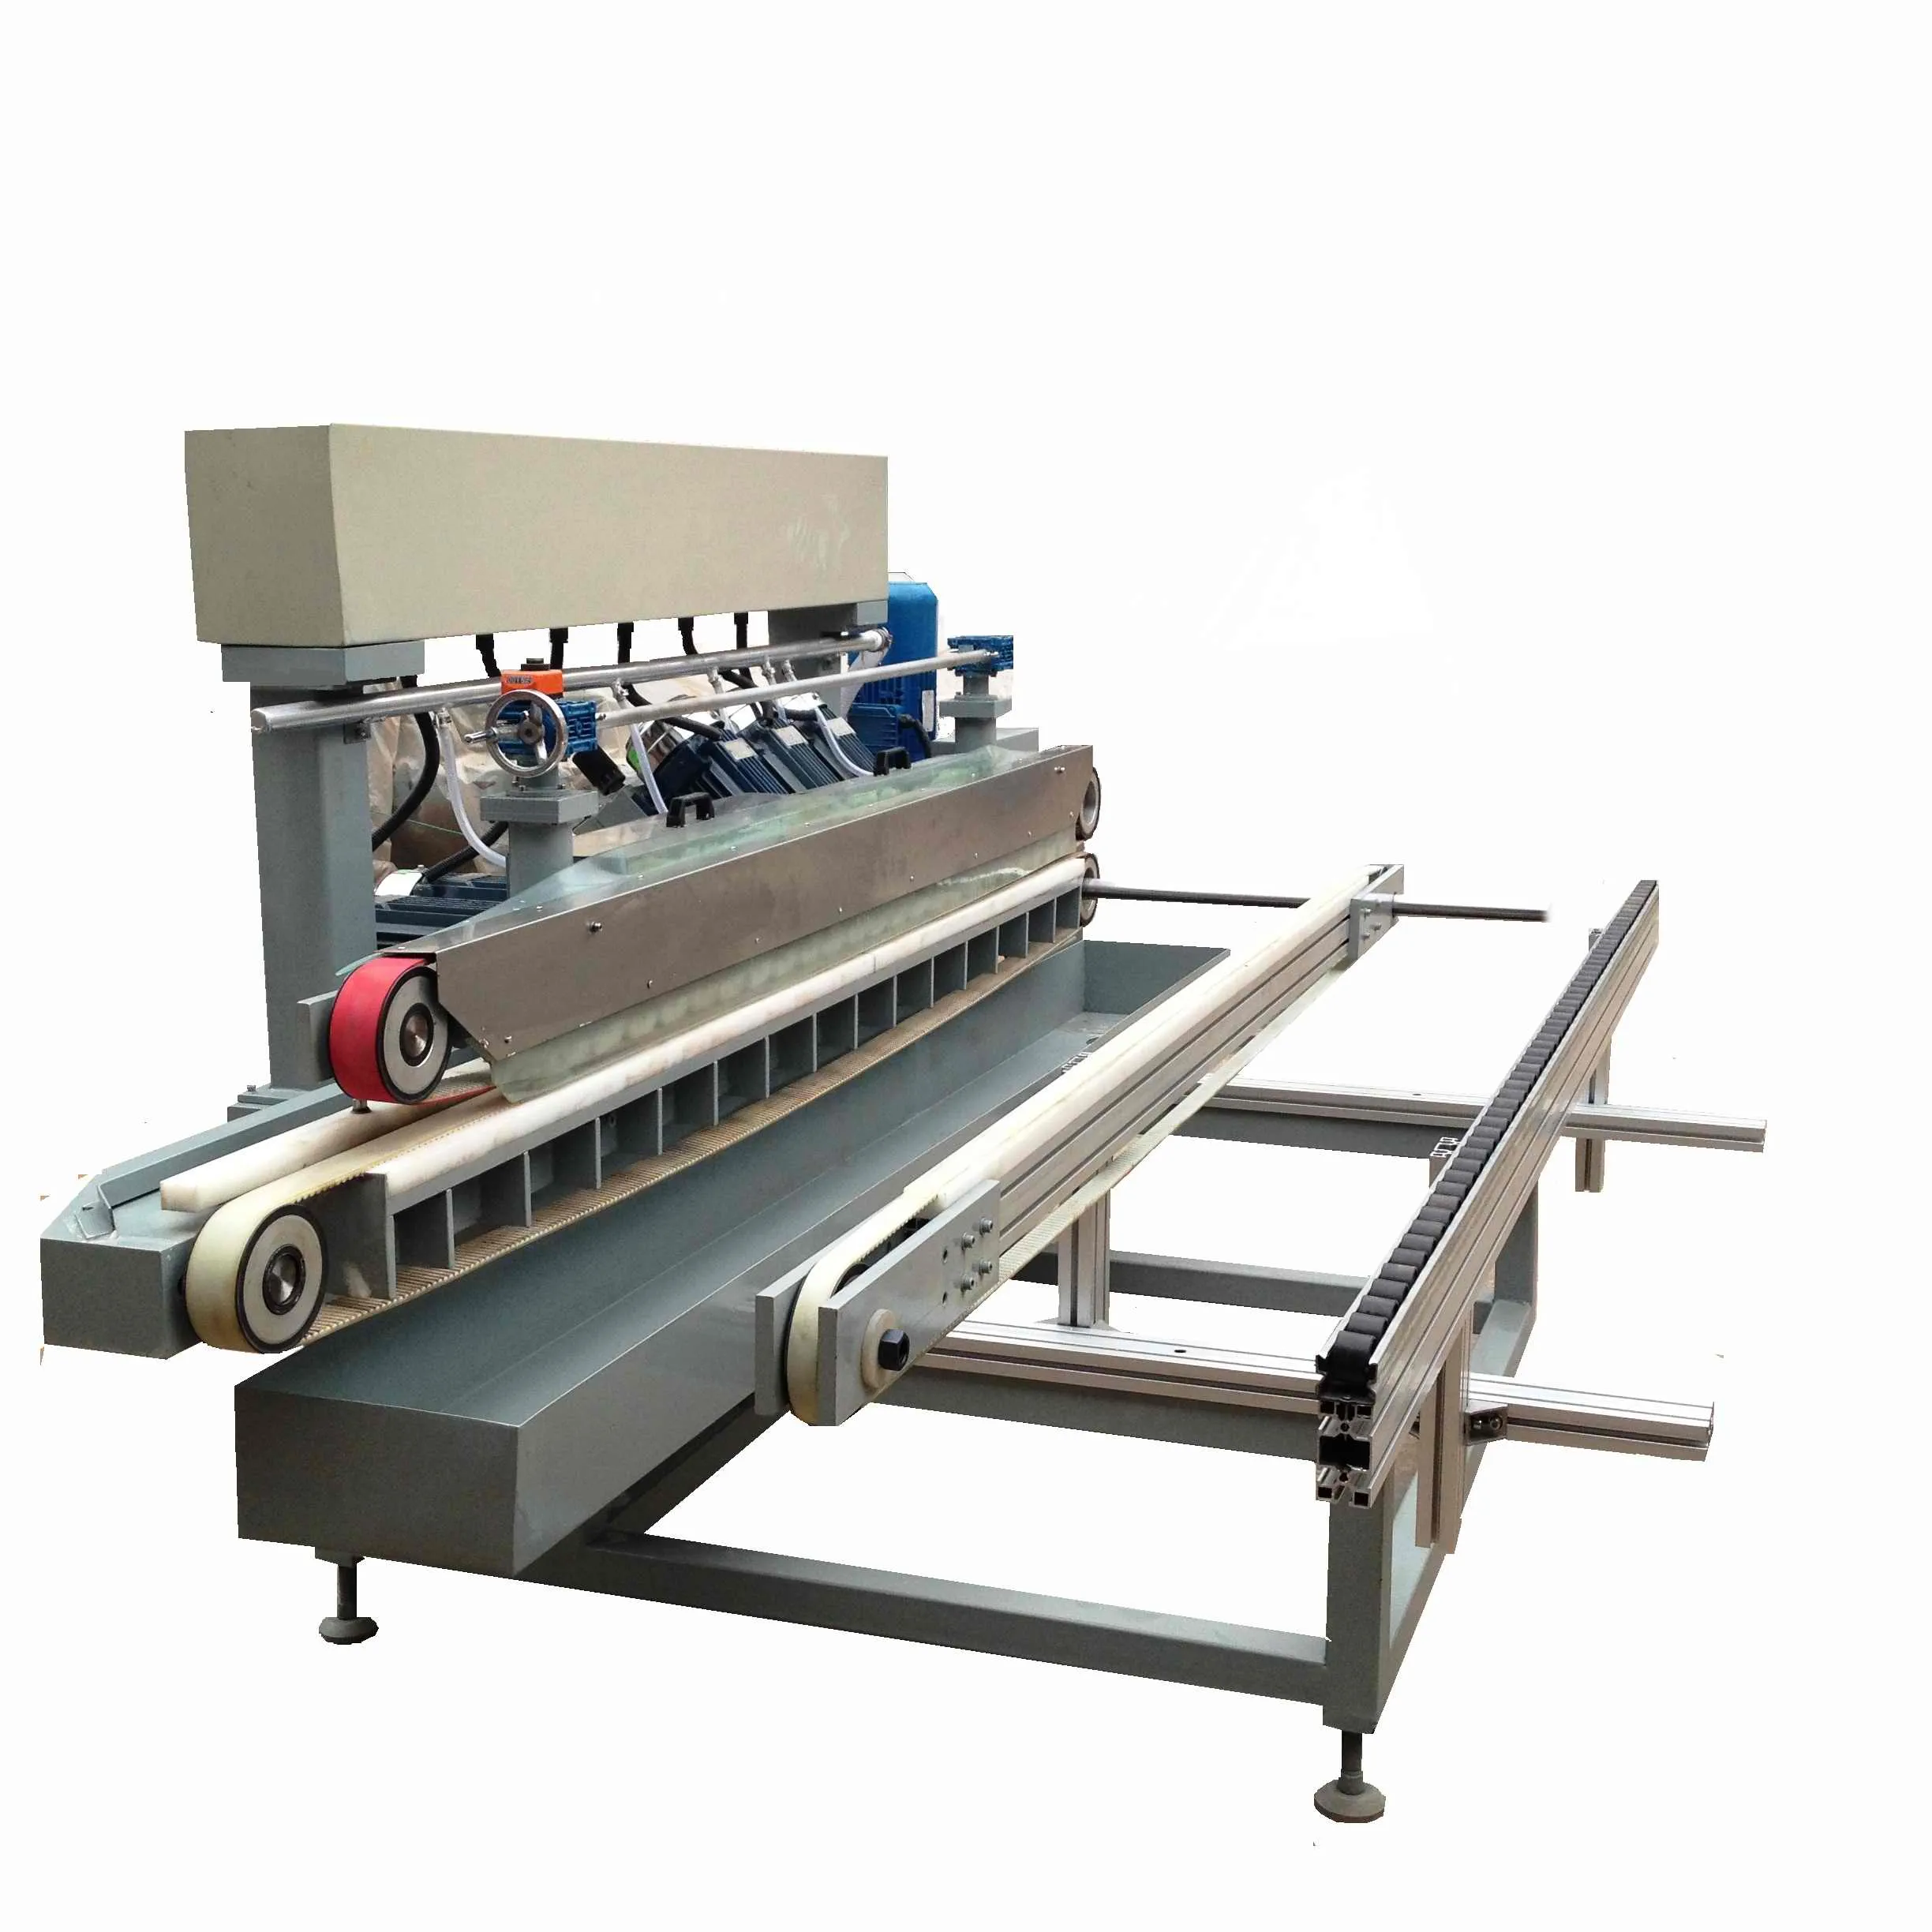 Ruilong máquina de moagem de borda de vidro cnc, automática, com função de polimento de trituração